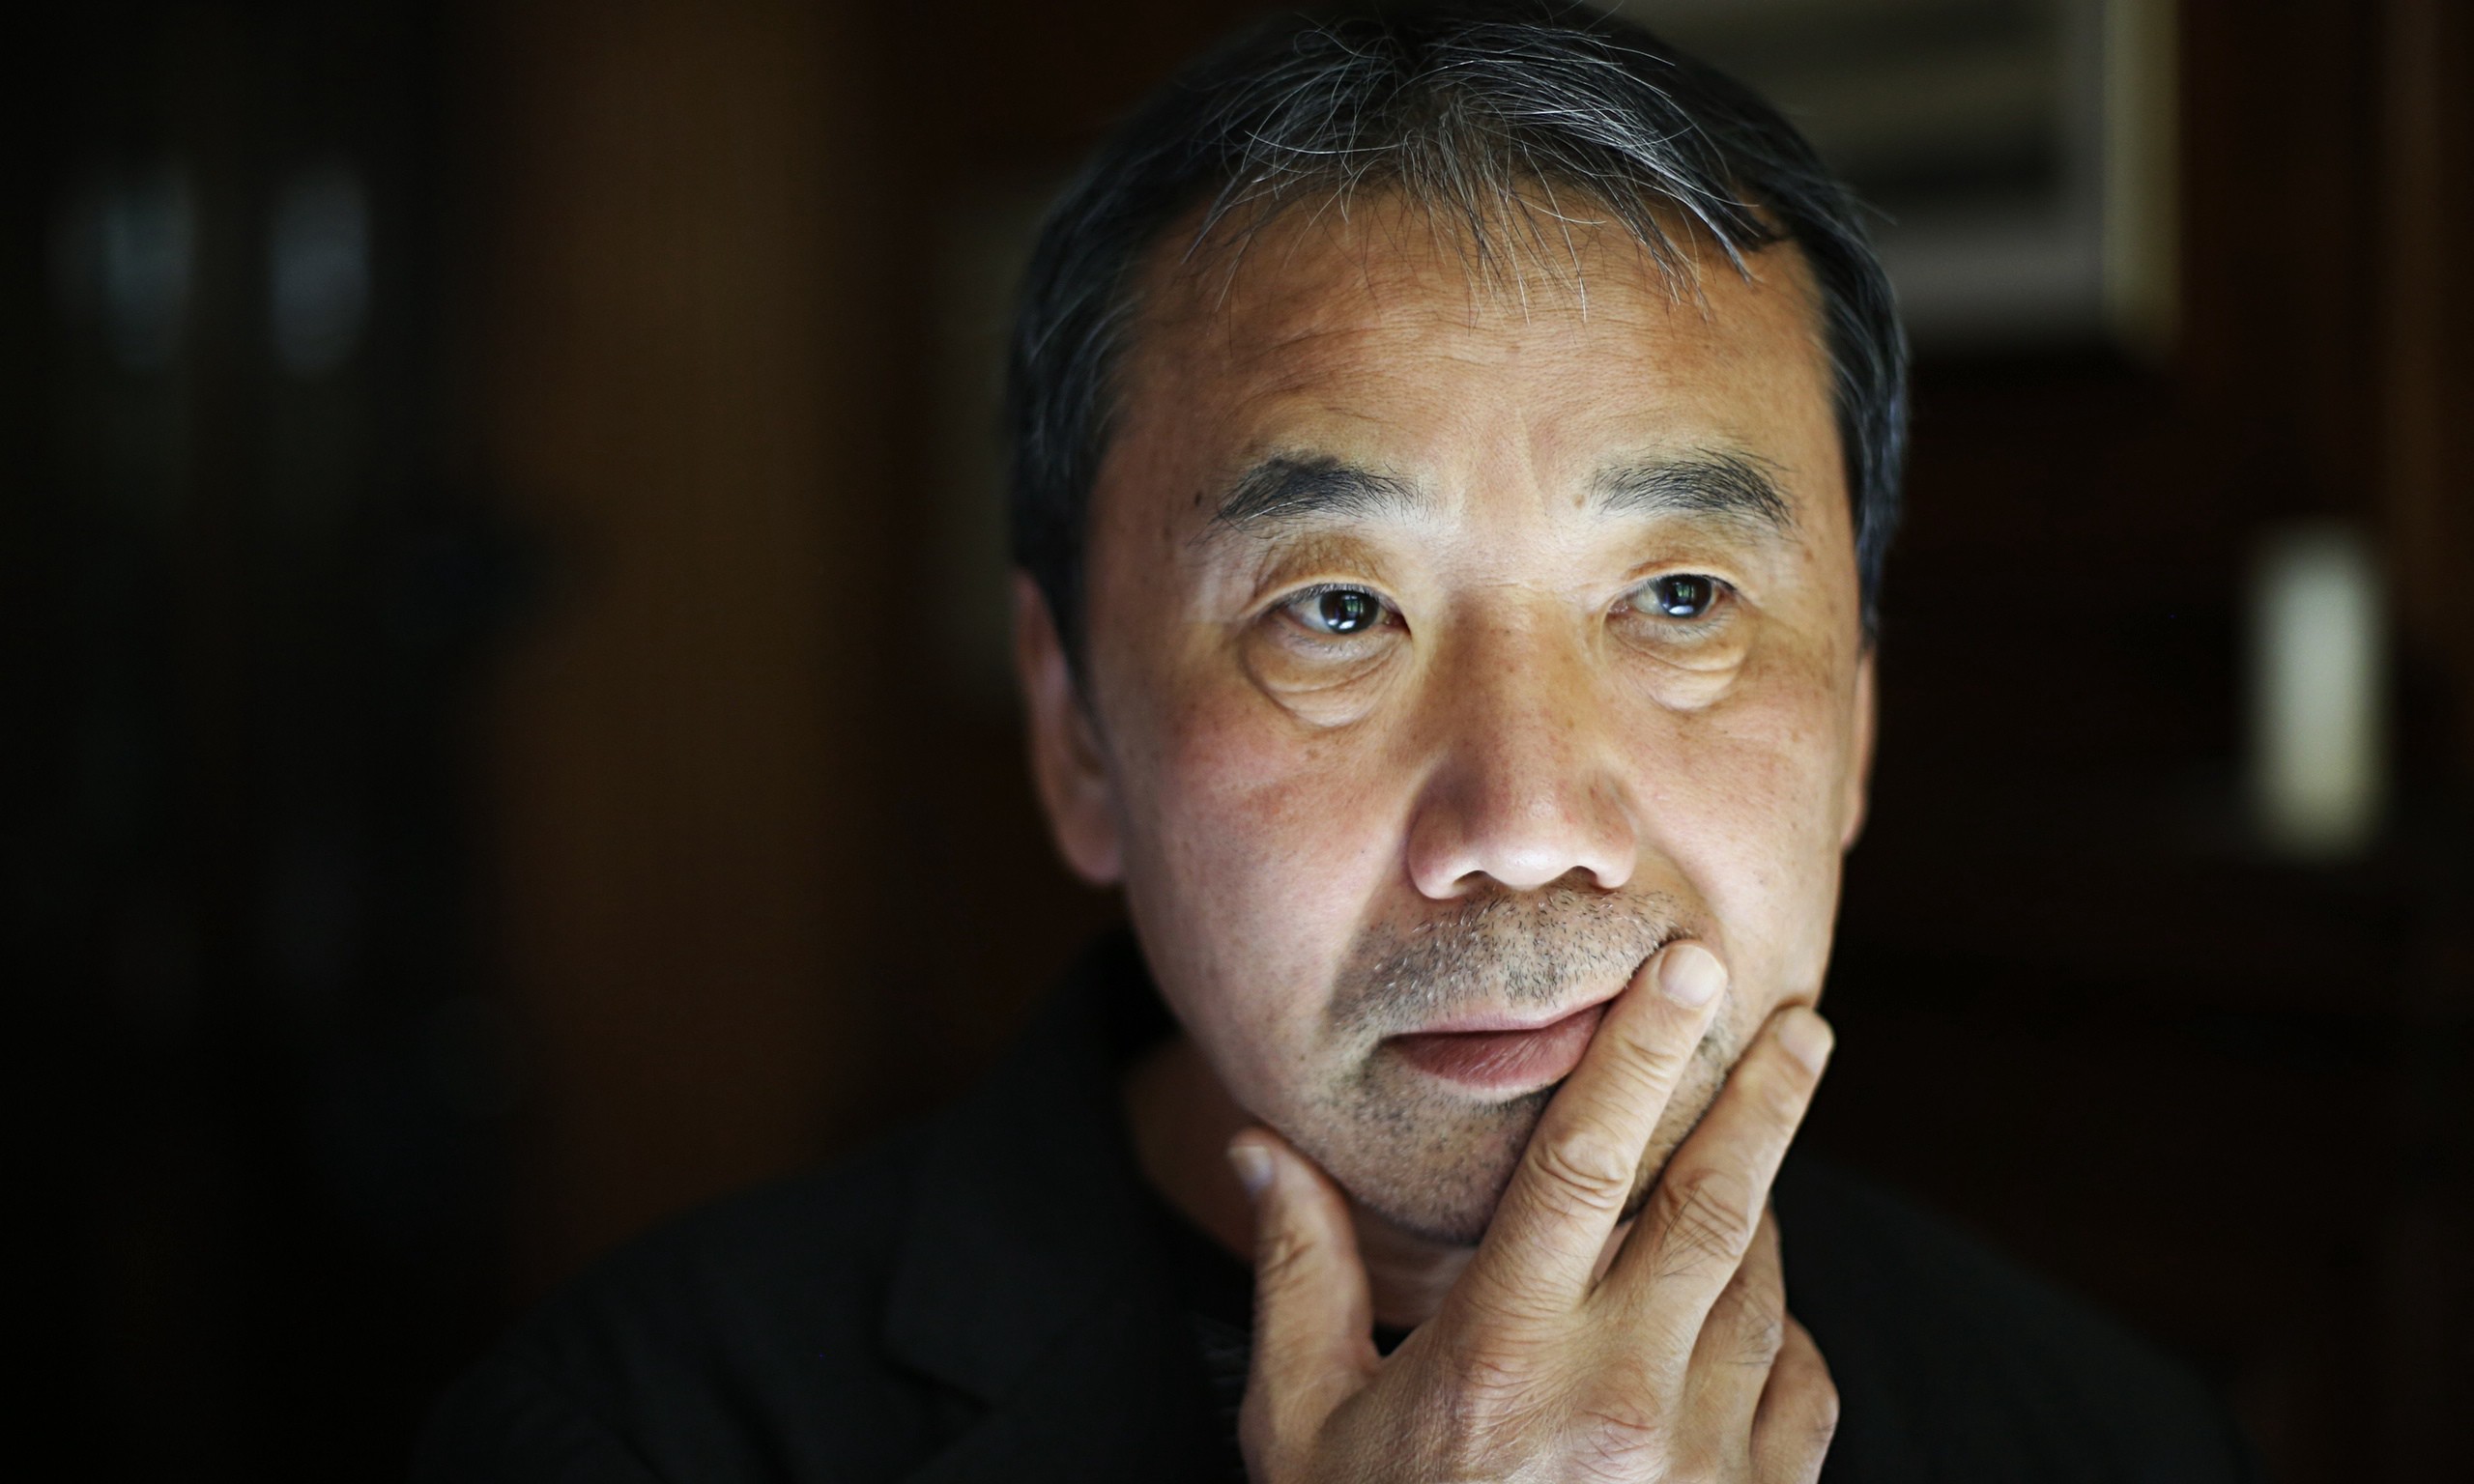 “Si apre la storia delle tenebre, ben più vasta di quanto ci immaginiamo”. Leggere “Underground” di Murakami Haruki al tempo della pandemia